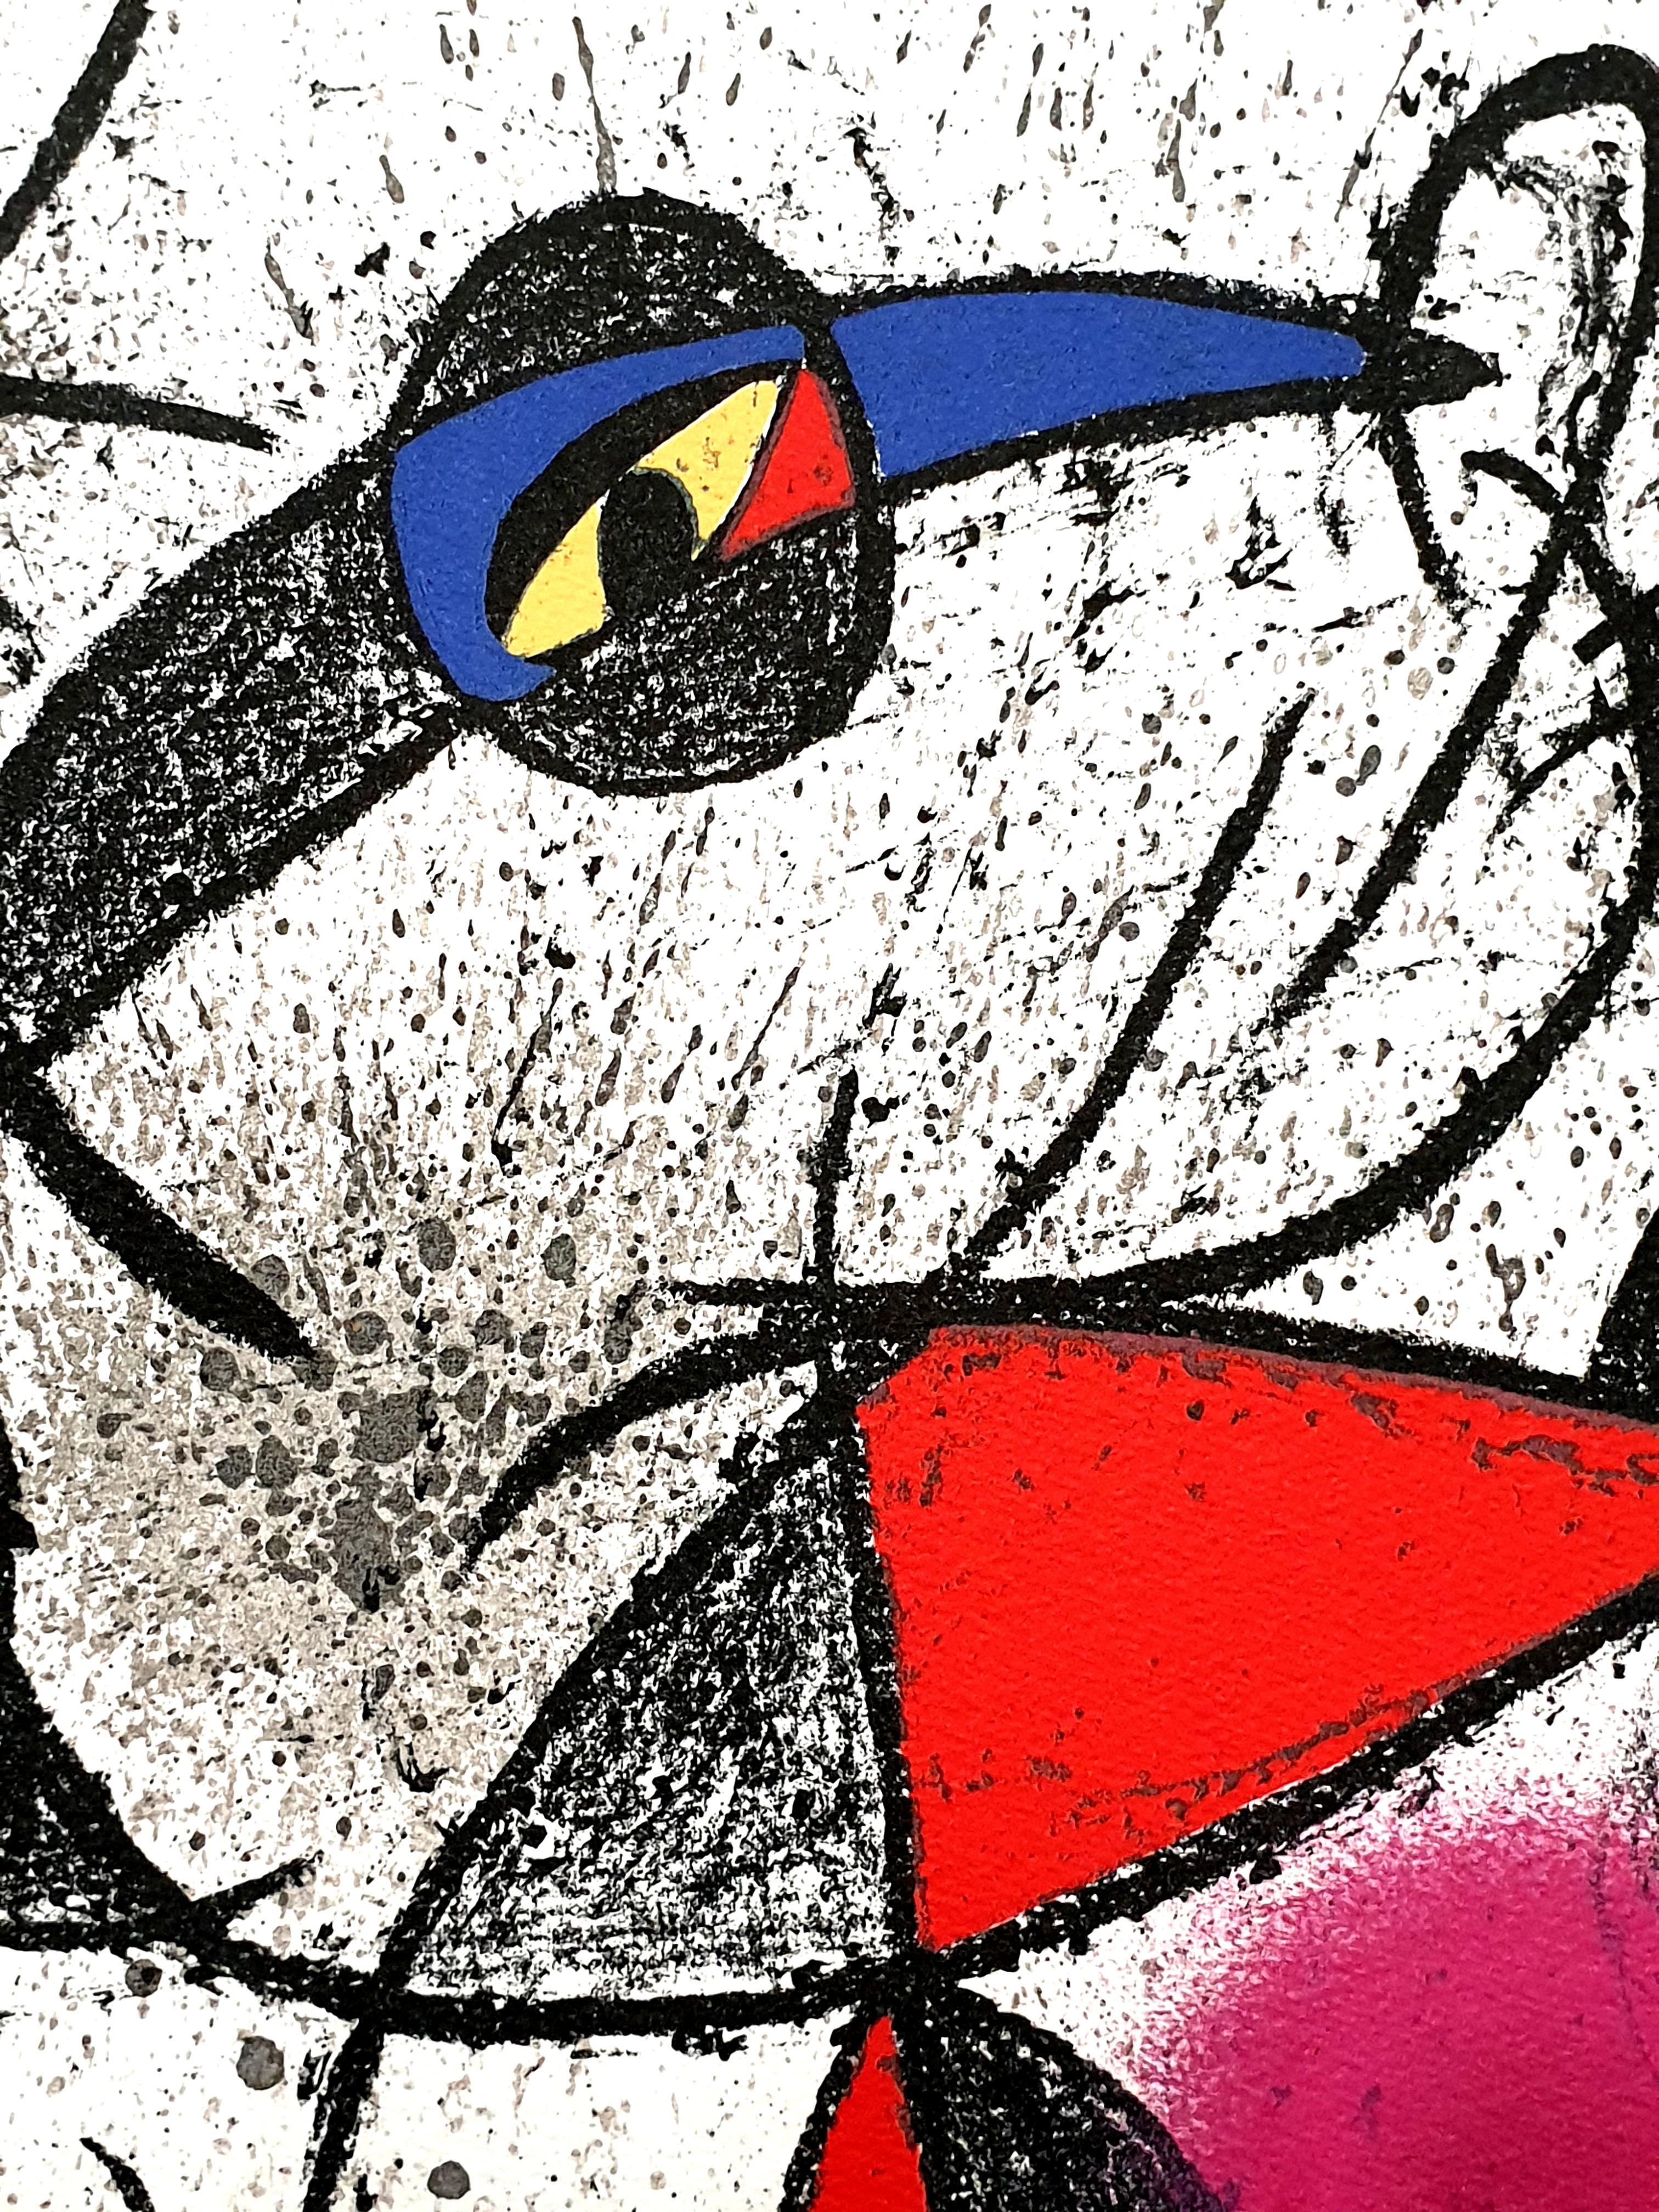 Joan Miro Lithographie abstraite originale de Miro
Artiste : Joan Miro
Imprimeur : Mourlot
Portefeuille :  Souvenirs et portraits d'artistes
Année : 1972
Edition : 800
Référence : Mourlot, 850
Non signé et non numéroté tel qu'il a été émis